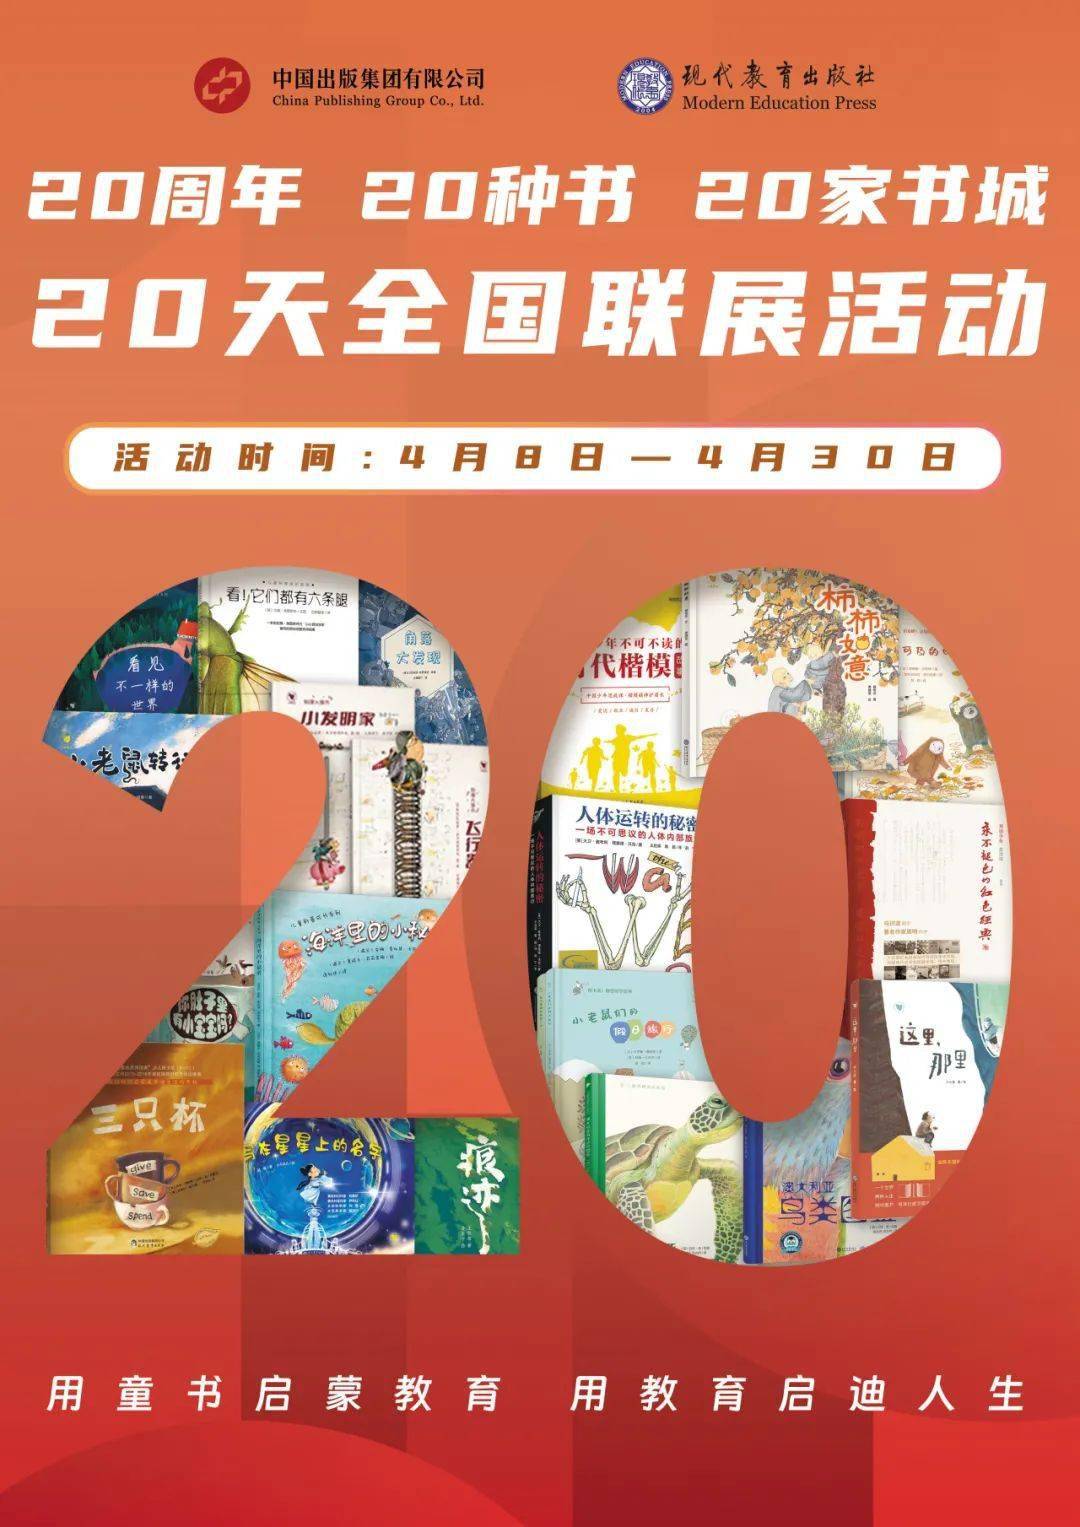 江南app：摩登训导出书社20周年庆丨20城联展点燃阅读热中(图1)